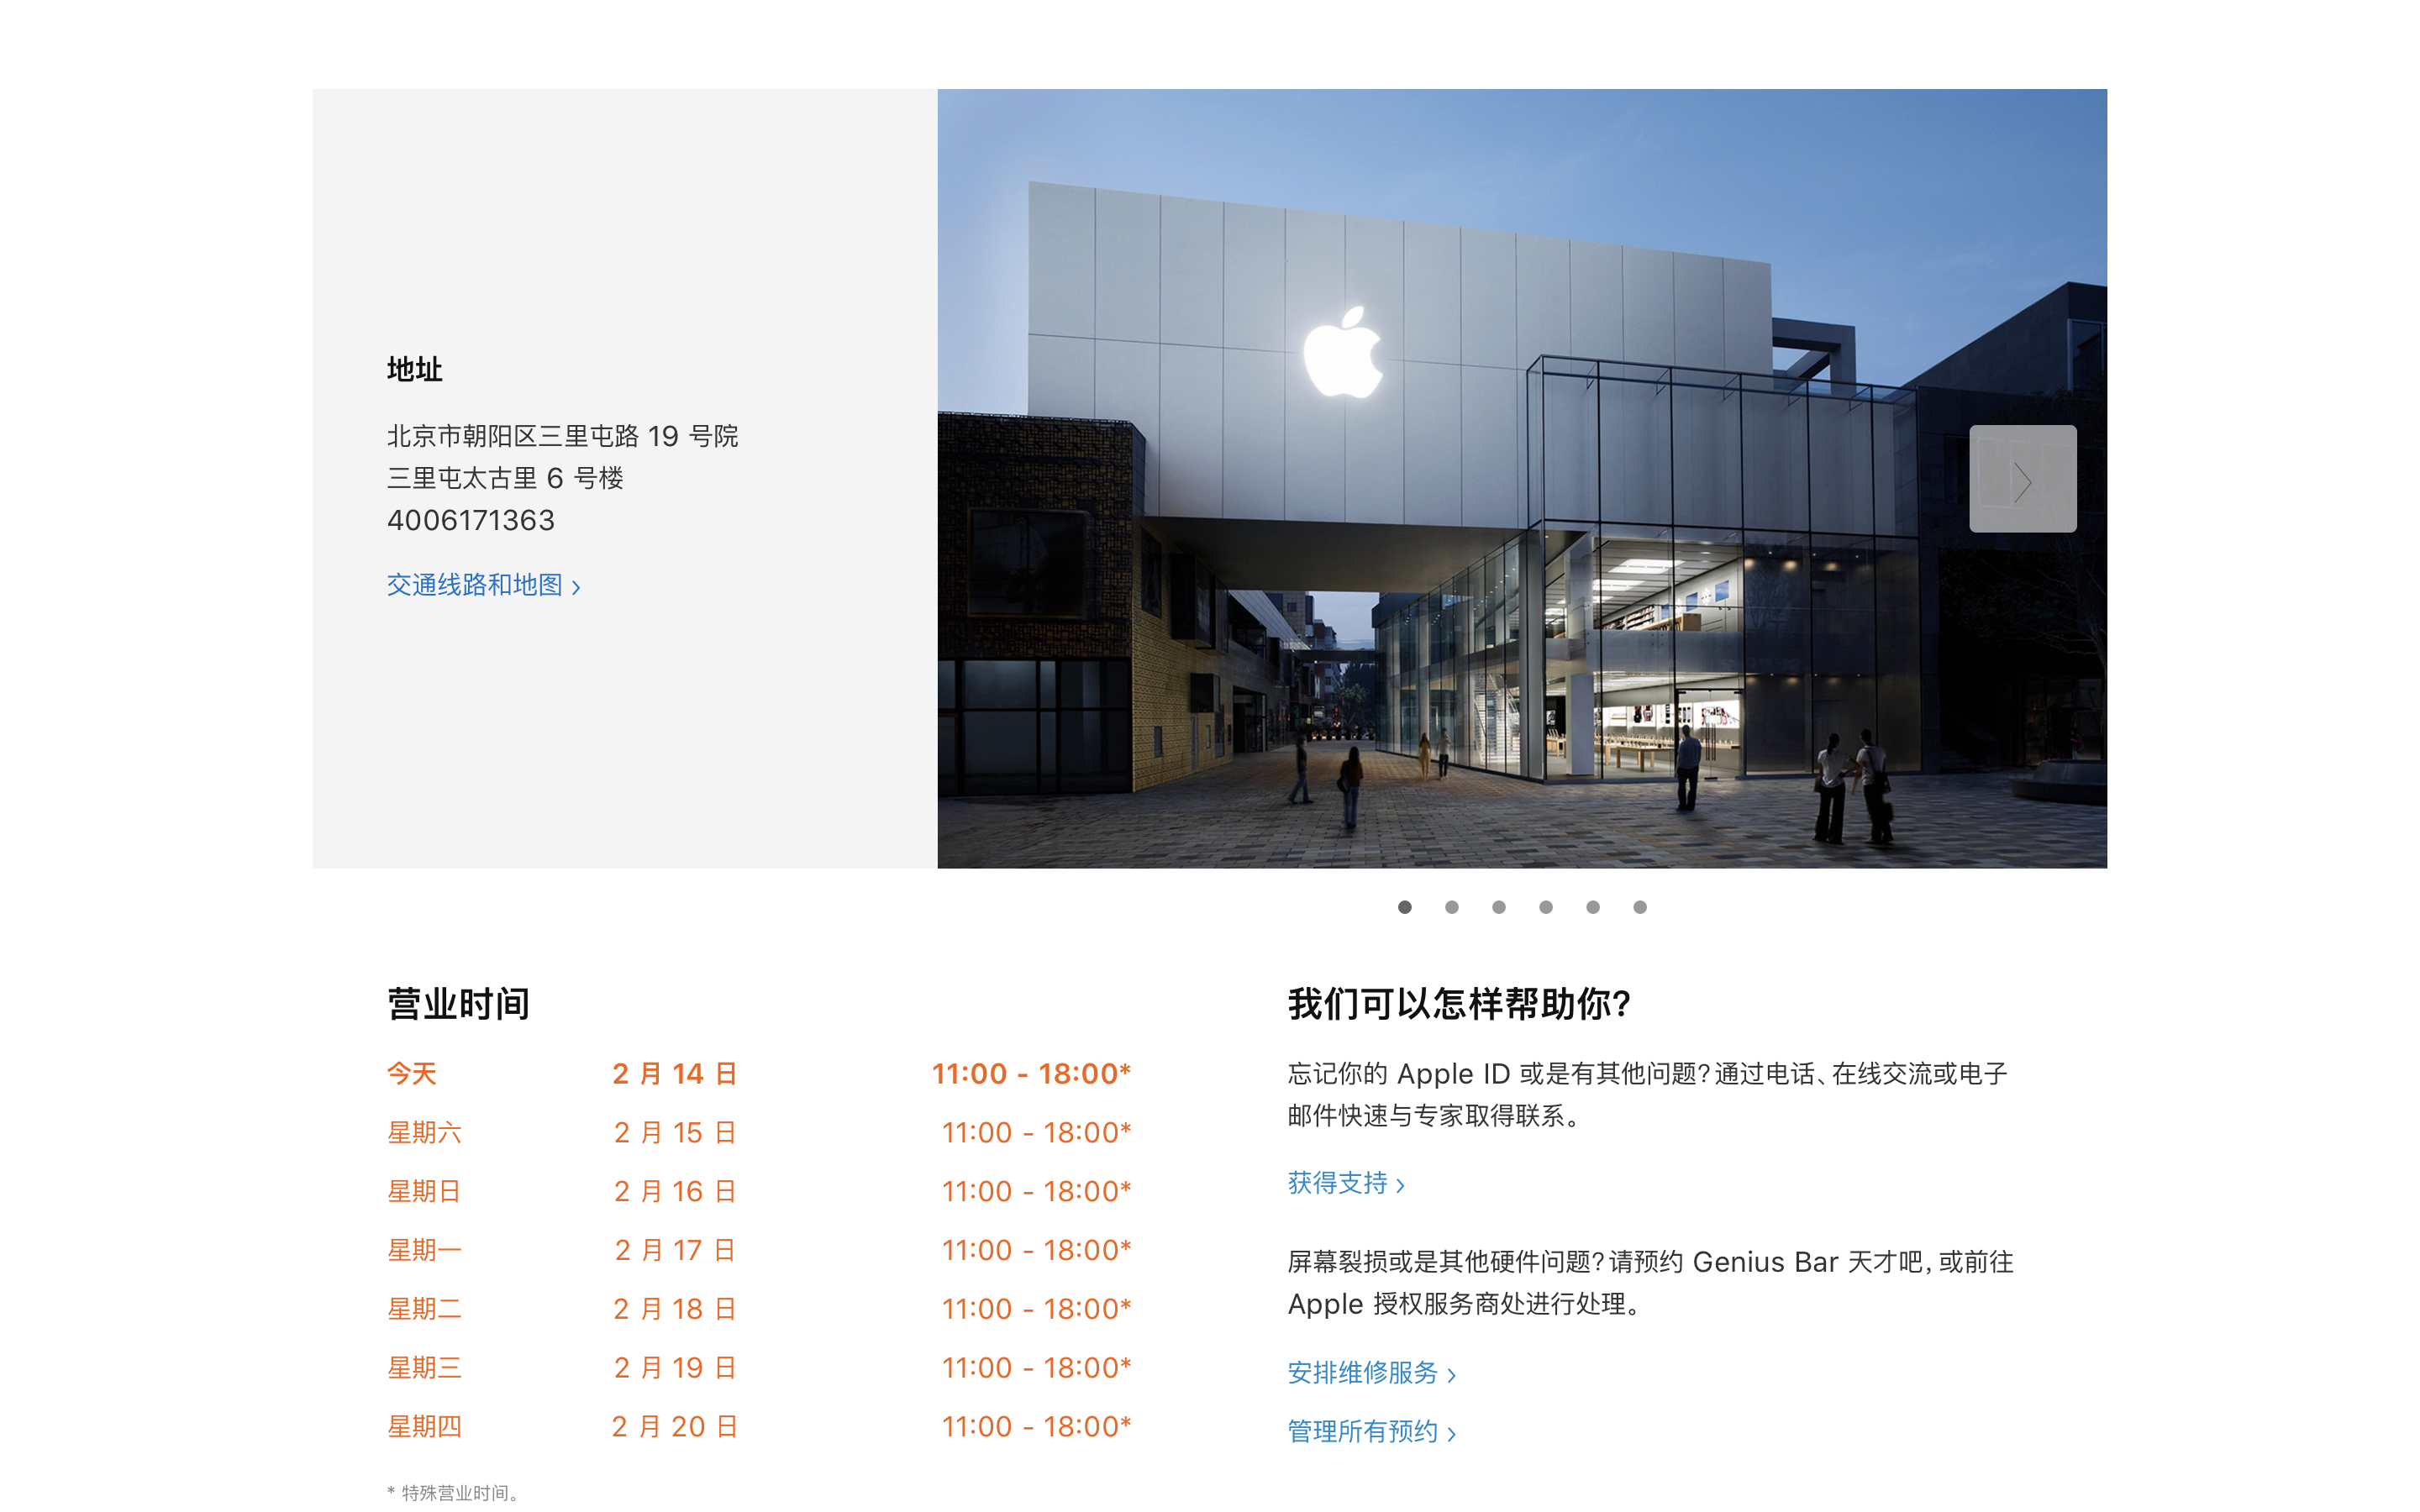 苹果北京五家零售店今日恢复营业 其他城市零售店依然关闭